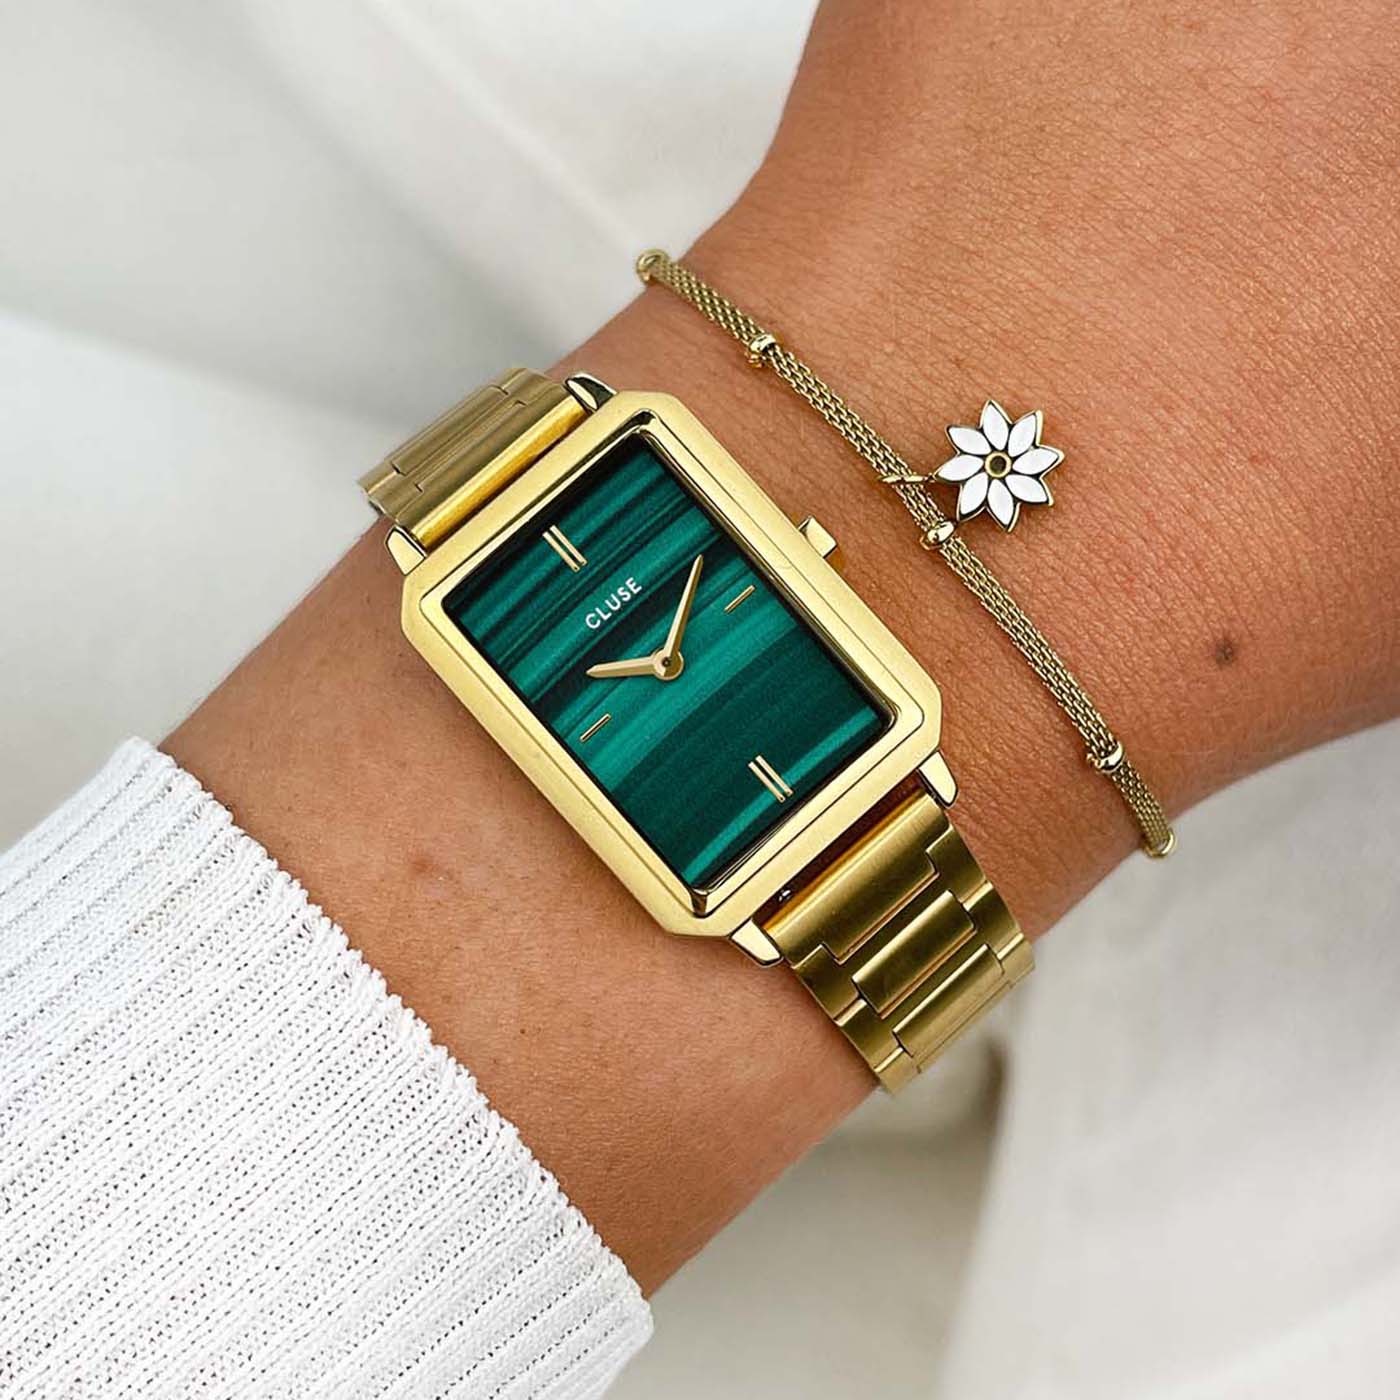 Frau trägt die Cluse "Fluette" Stahl-Uhr mit grünem Malachit-Druck-Zifferblatt mit goldfarbenem Gehäuse und kombiniert es mit einem goldenen Armband